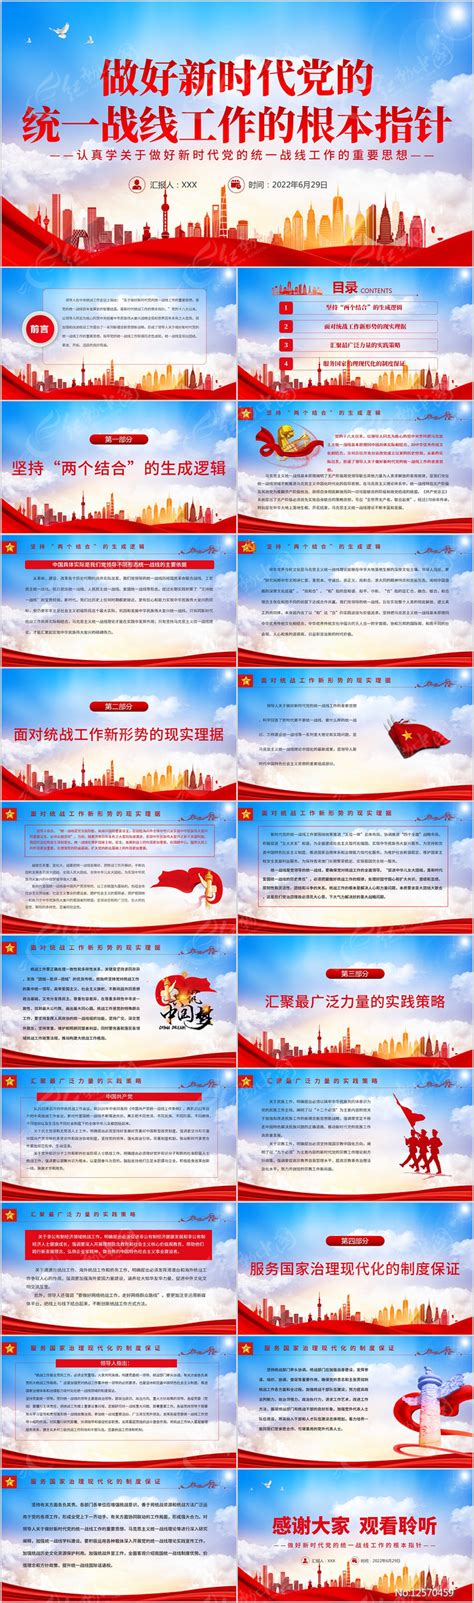 做好新时代党的统一战线工作的根本指针下载_红动中国